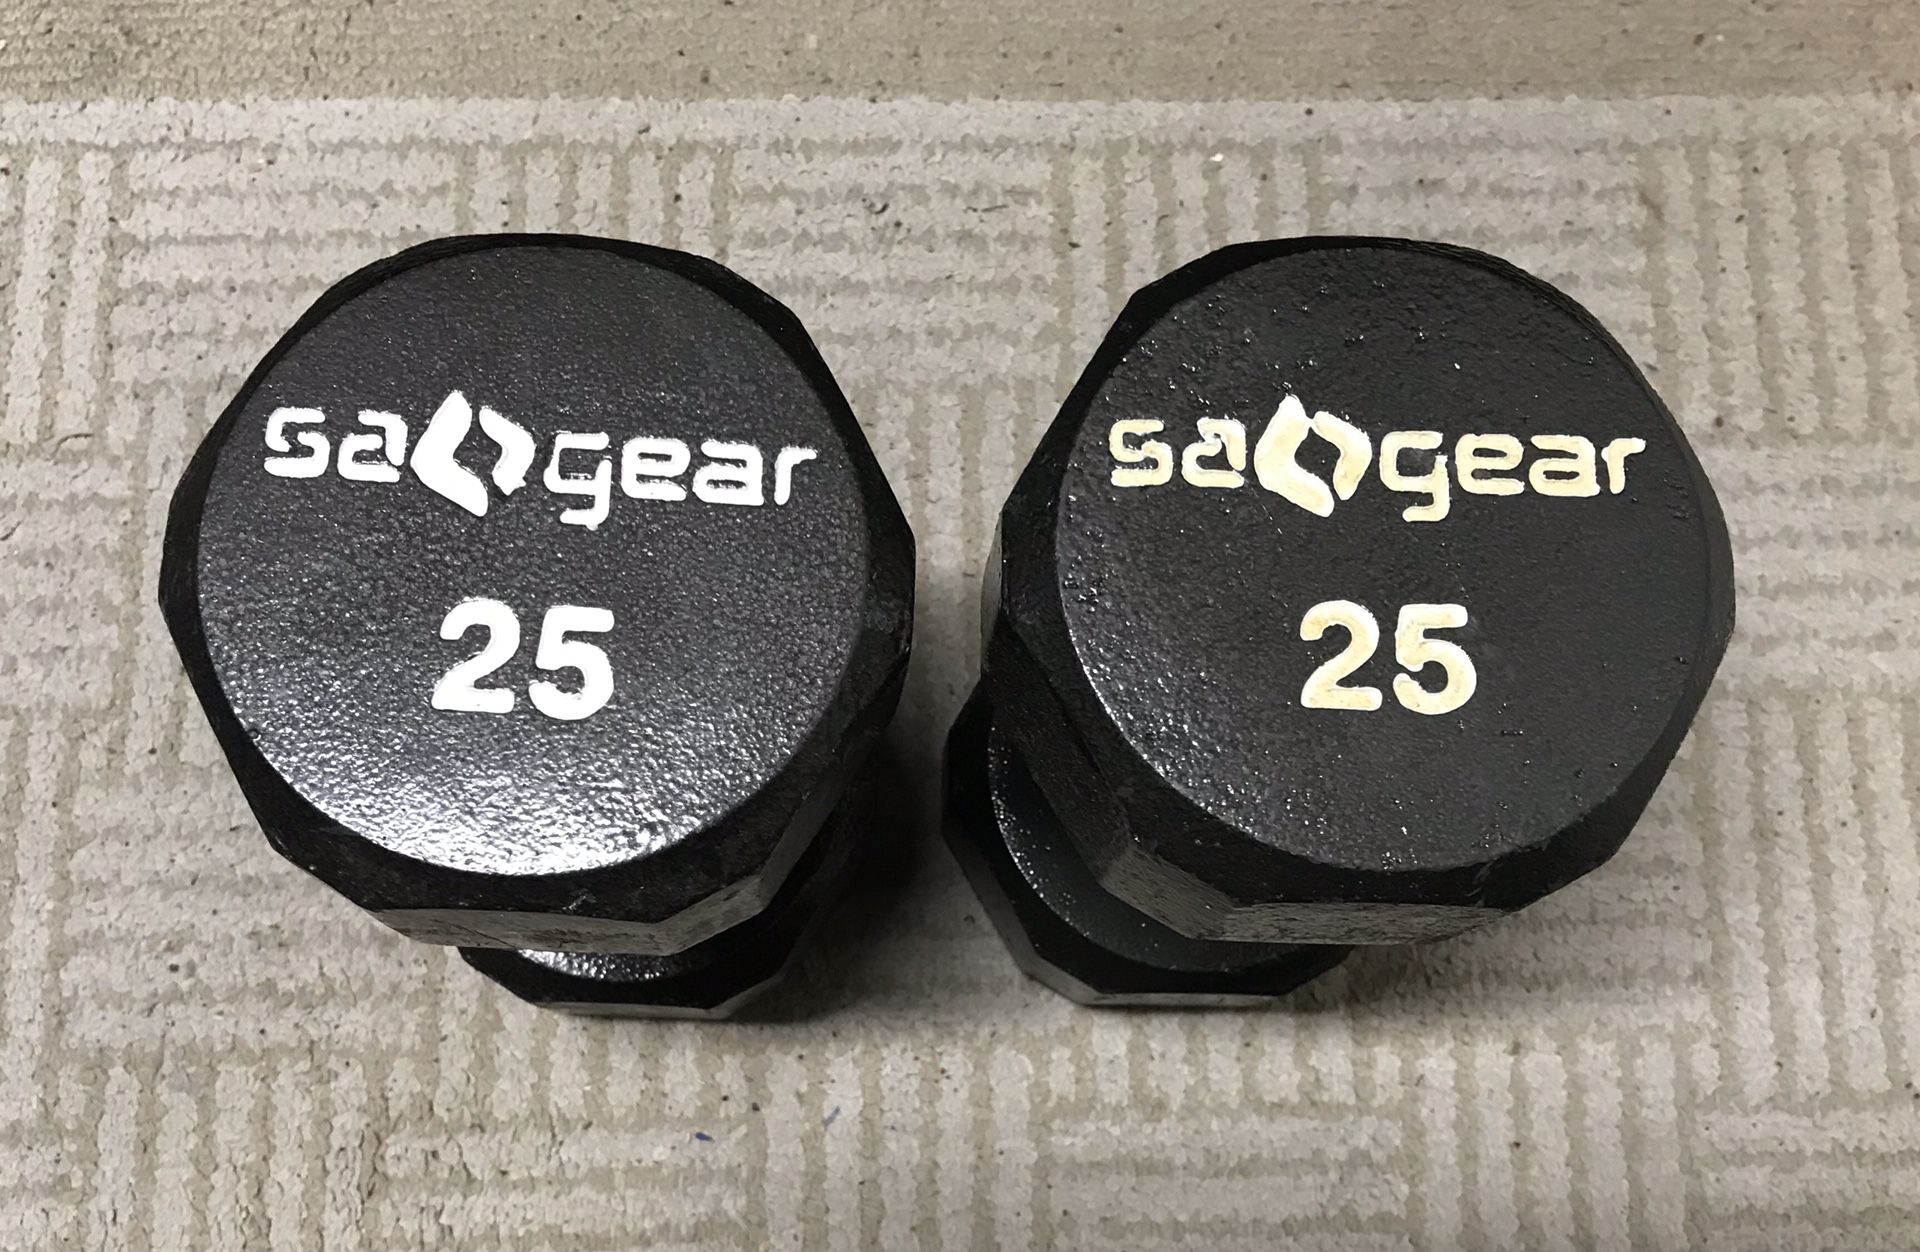 SA() Gear 25lbs dumbbells (pair)